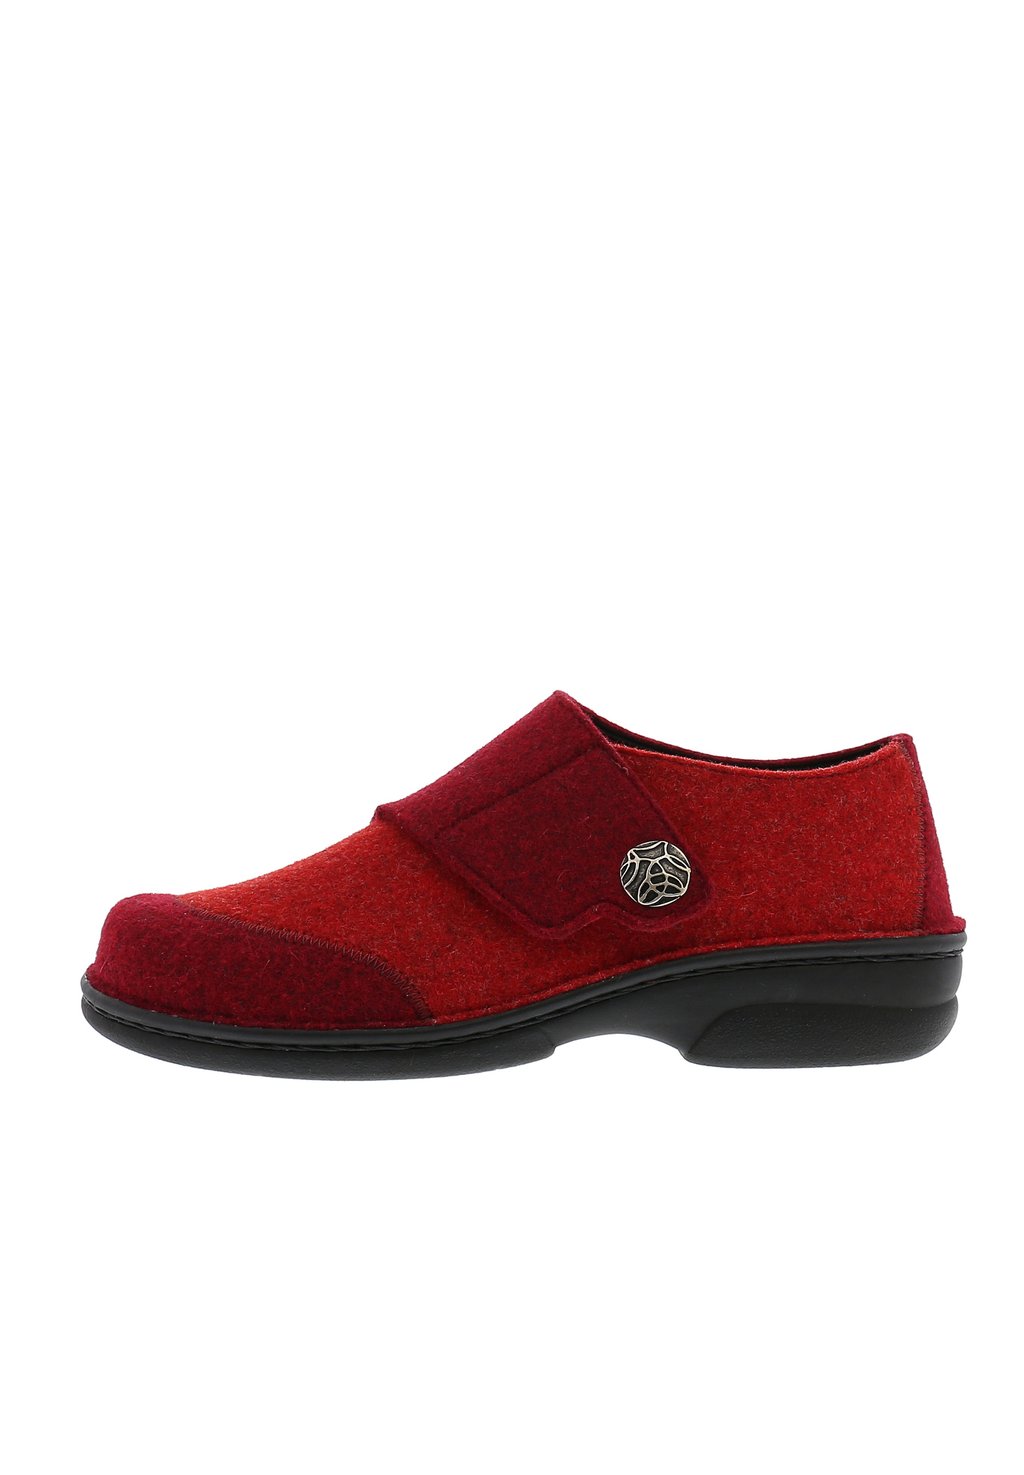 Спортивные туфли на шнуровке JARLA Berkemann, цвет red, light red